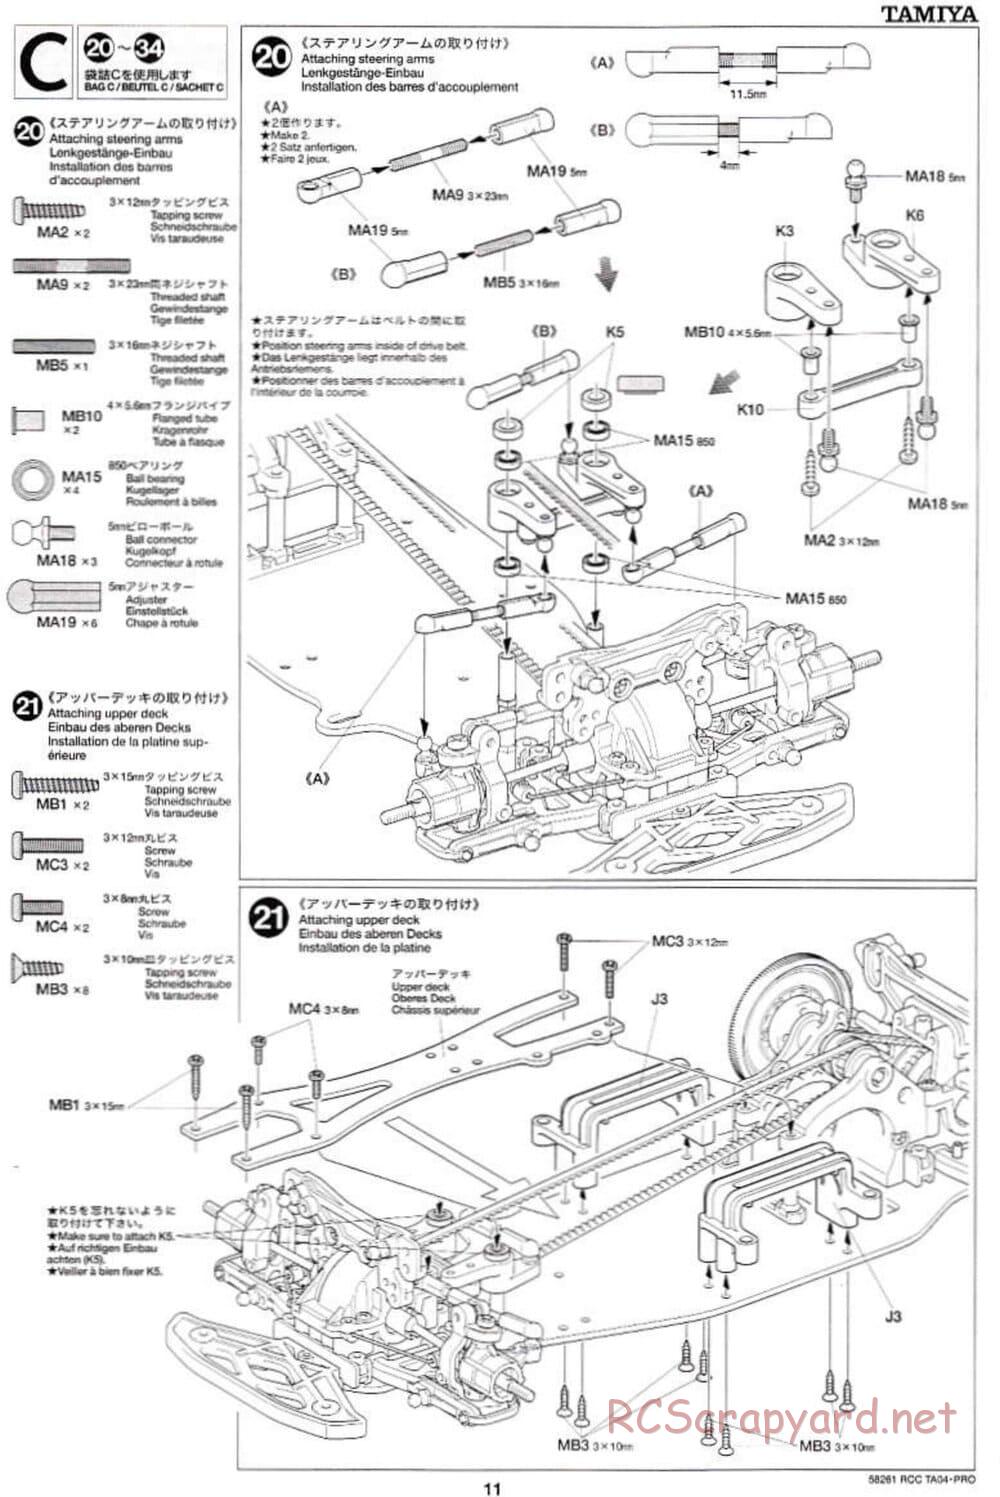 Tamiya - TA-04 Pro Chassis - Manual - Page 11